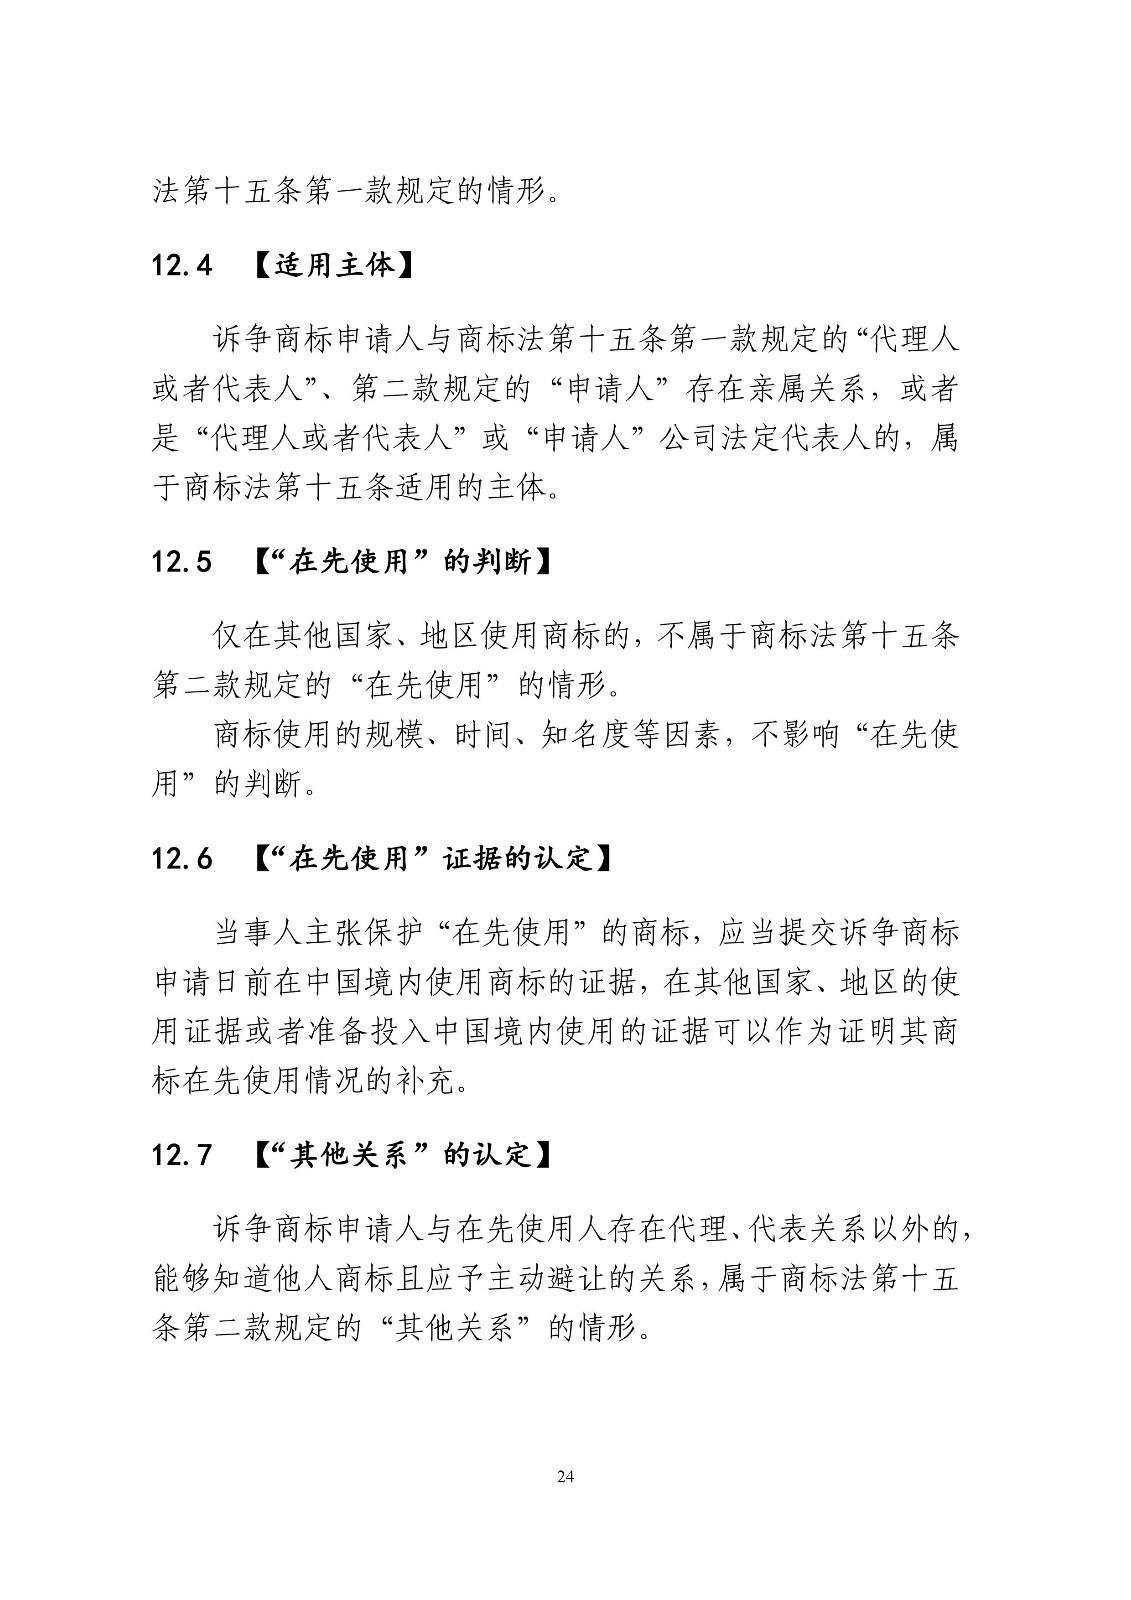 北京法院制定《商标授权确权行政案件审理指南》